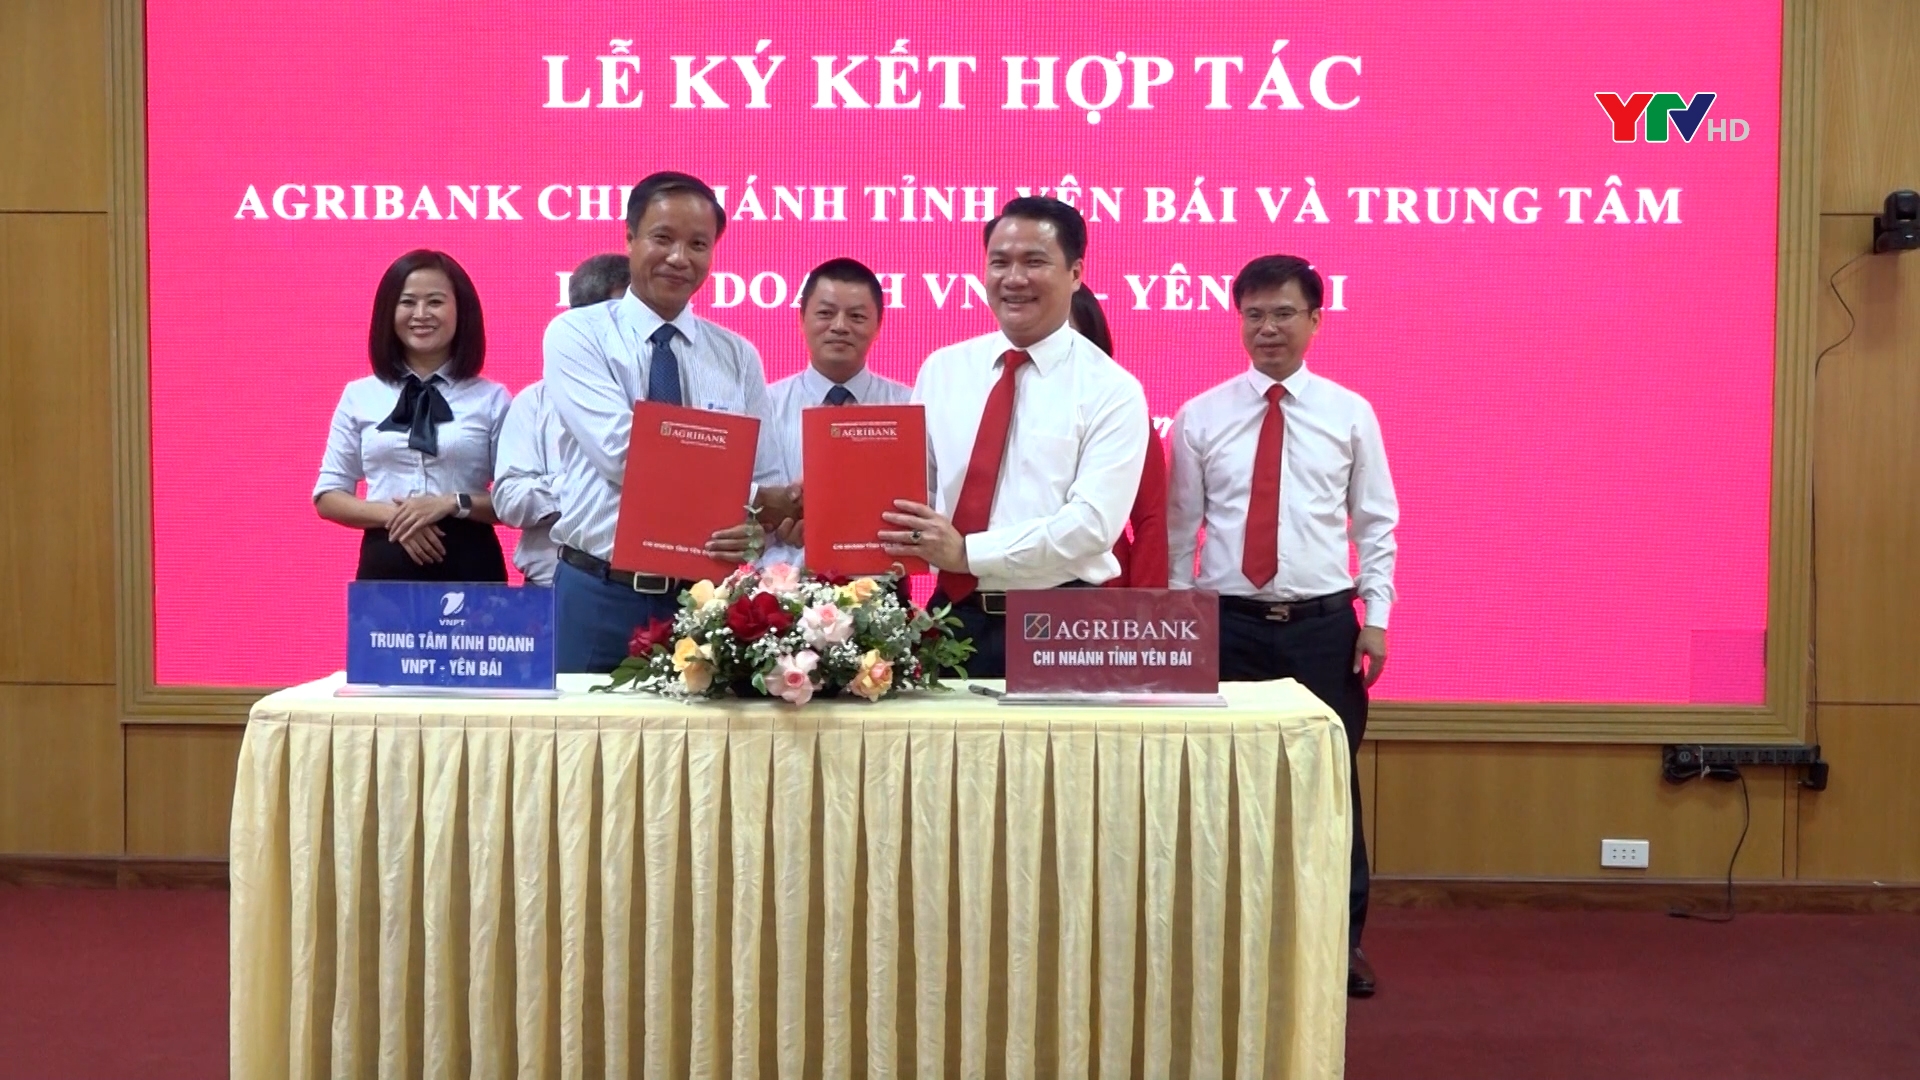 Agribank Yên Bái và Trung tâm kinh doanh VNPT Yên Bái ký kết thỏa thuận hợp tác